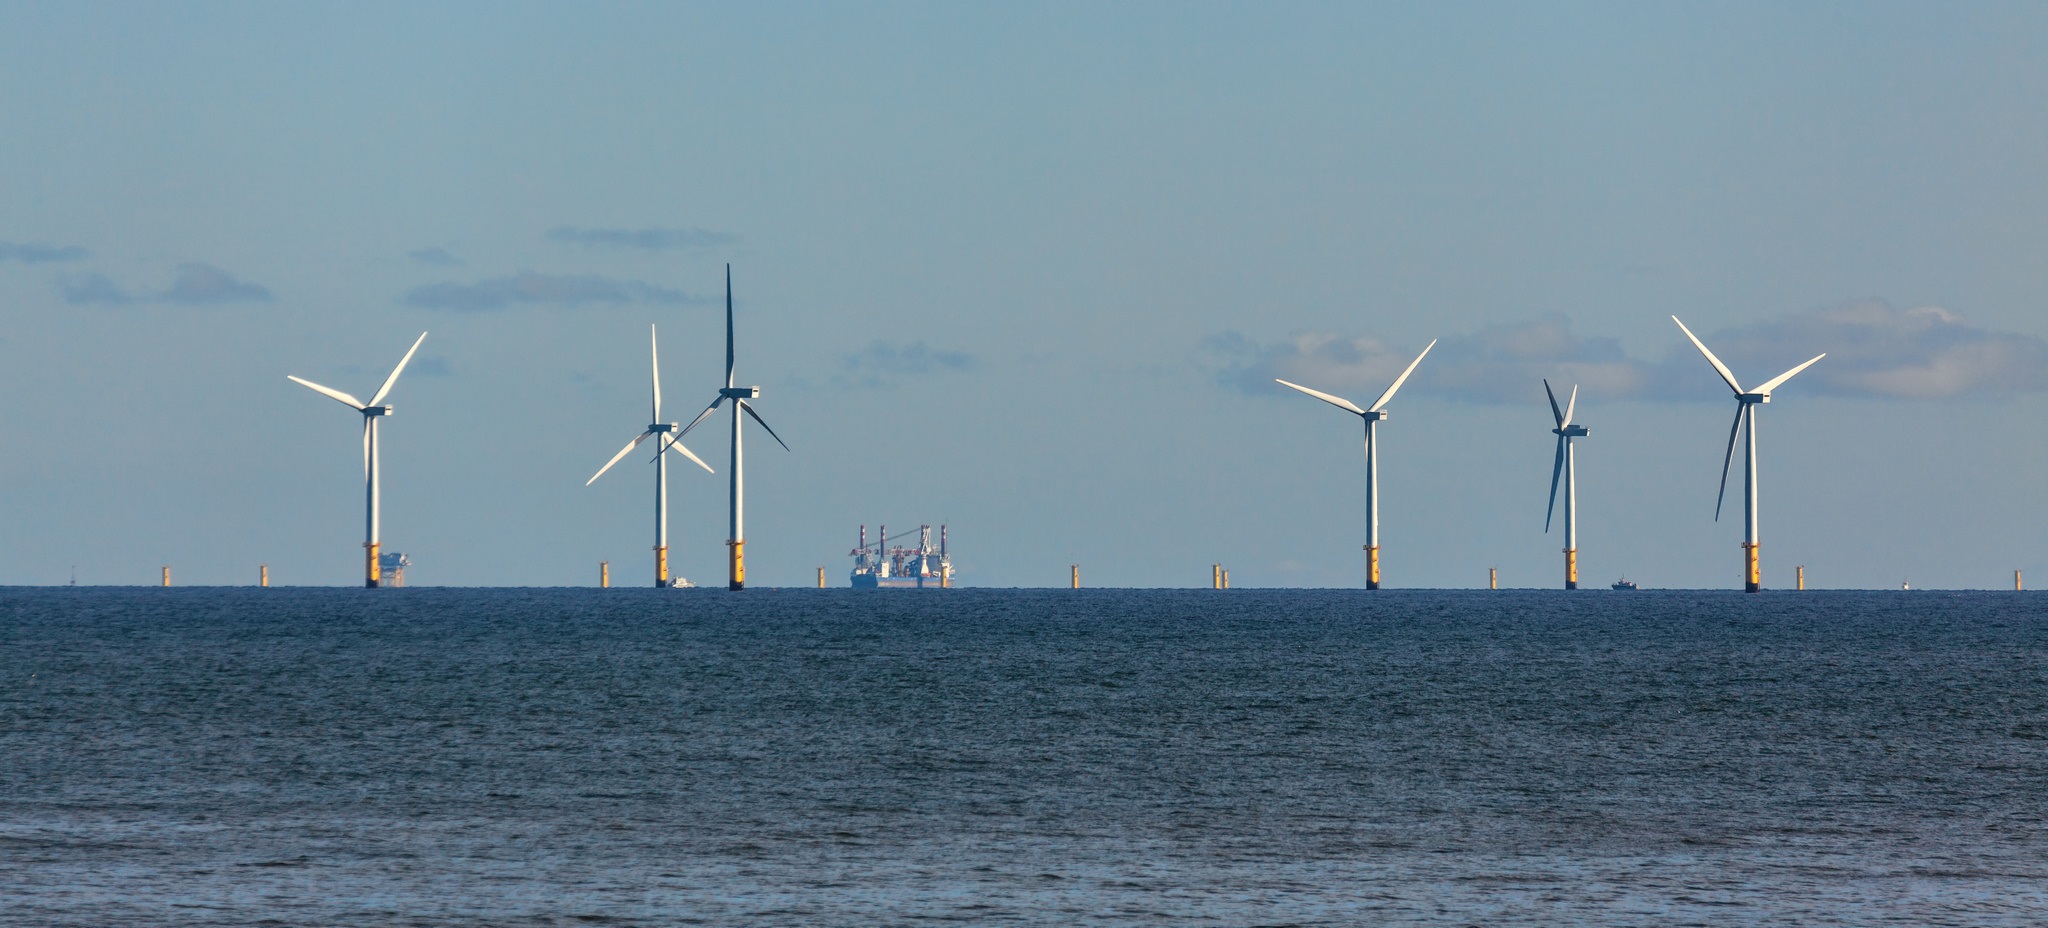 Des éoliennes offshore au pays de Galles. © philipbird123, Fotolia